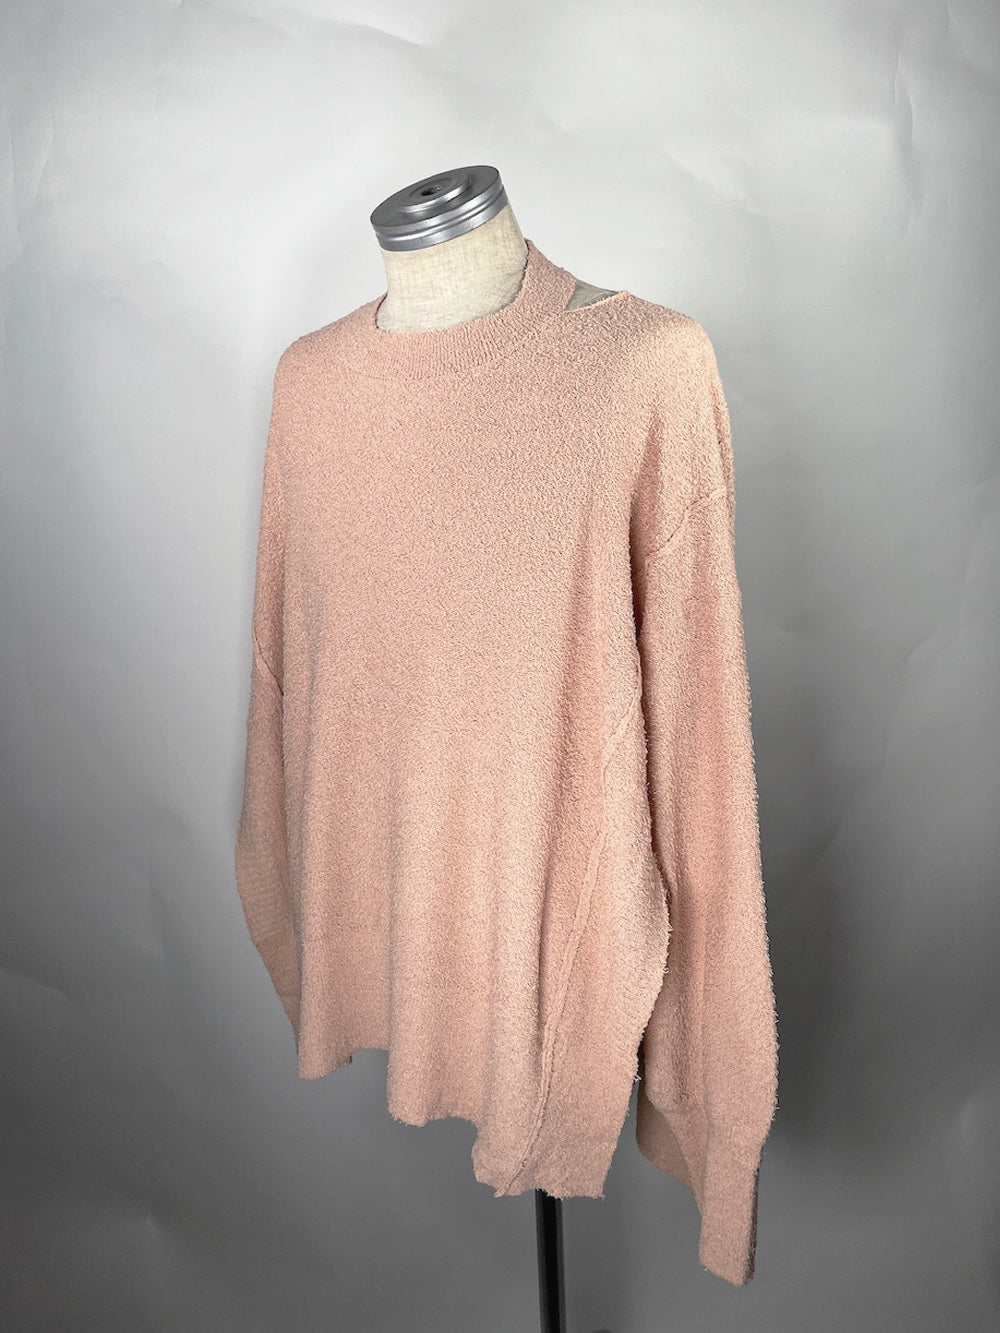 LB23SS-KN02-PL | Pintxos 纱线侧开叉夏季针织衫 | 珊瑚色